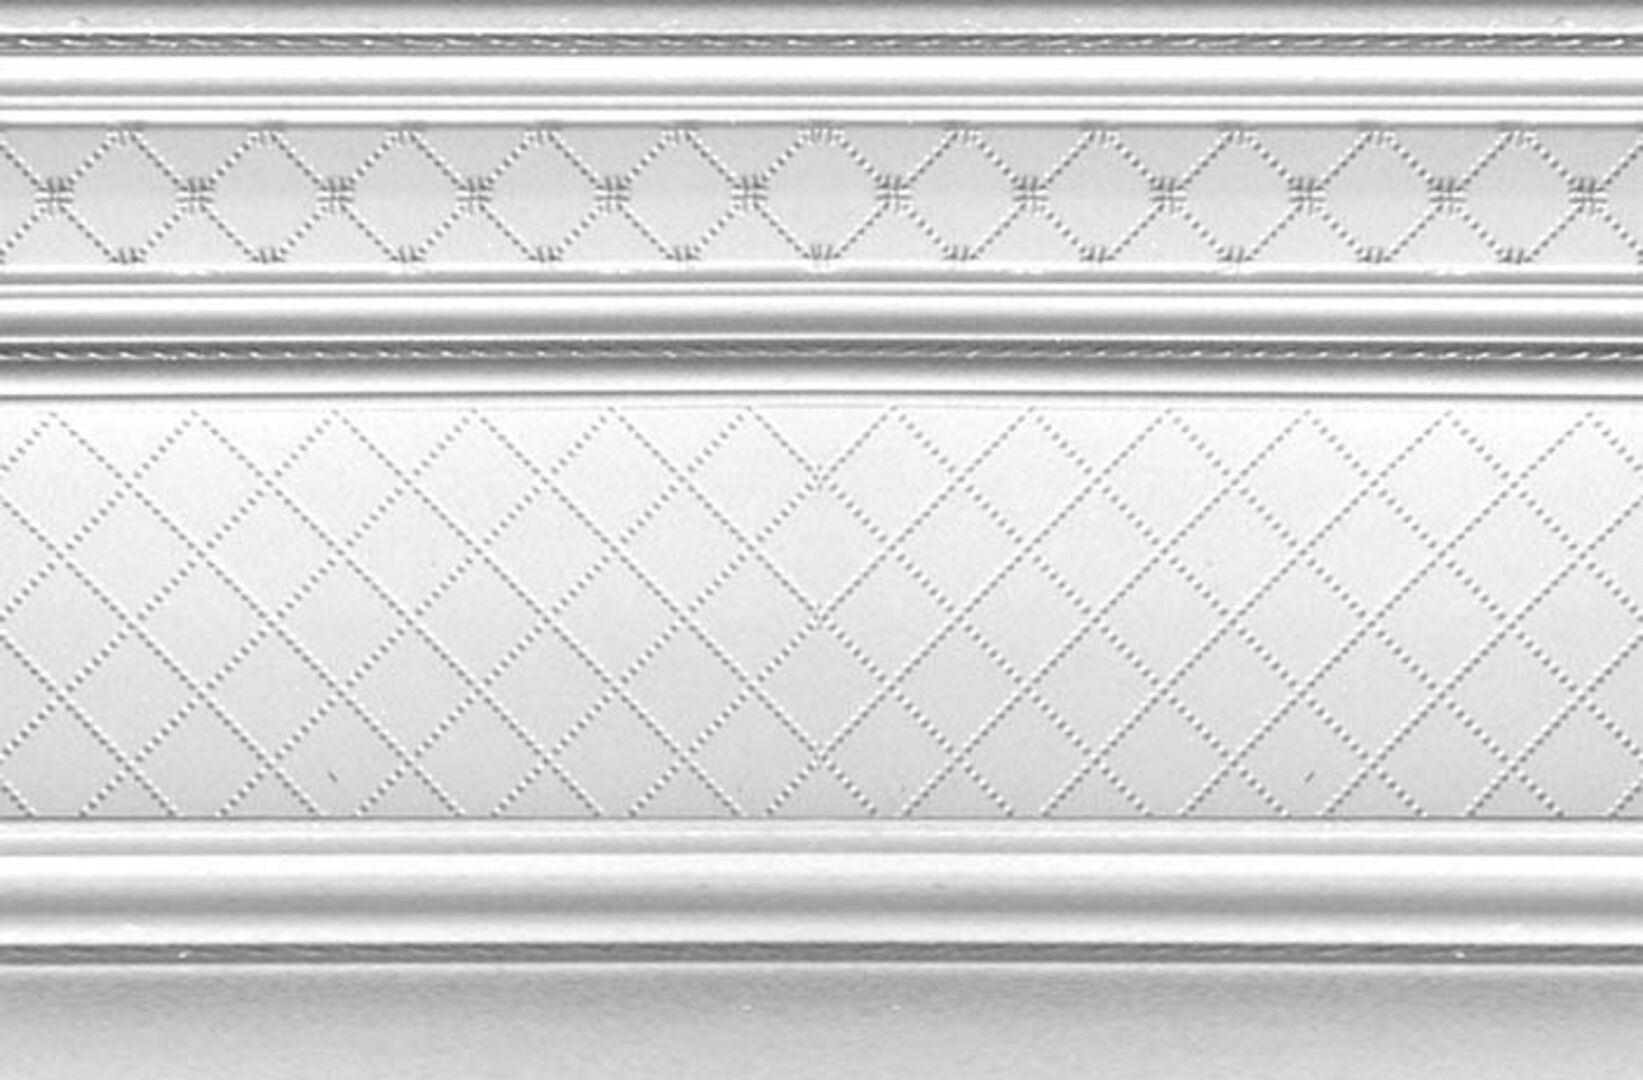 Керамическая плитка ZOCALO LONDON 20*30 / коллекция BUXY-MODUS-LONDON / производитель DUAL GRES / страна Испания